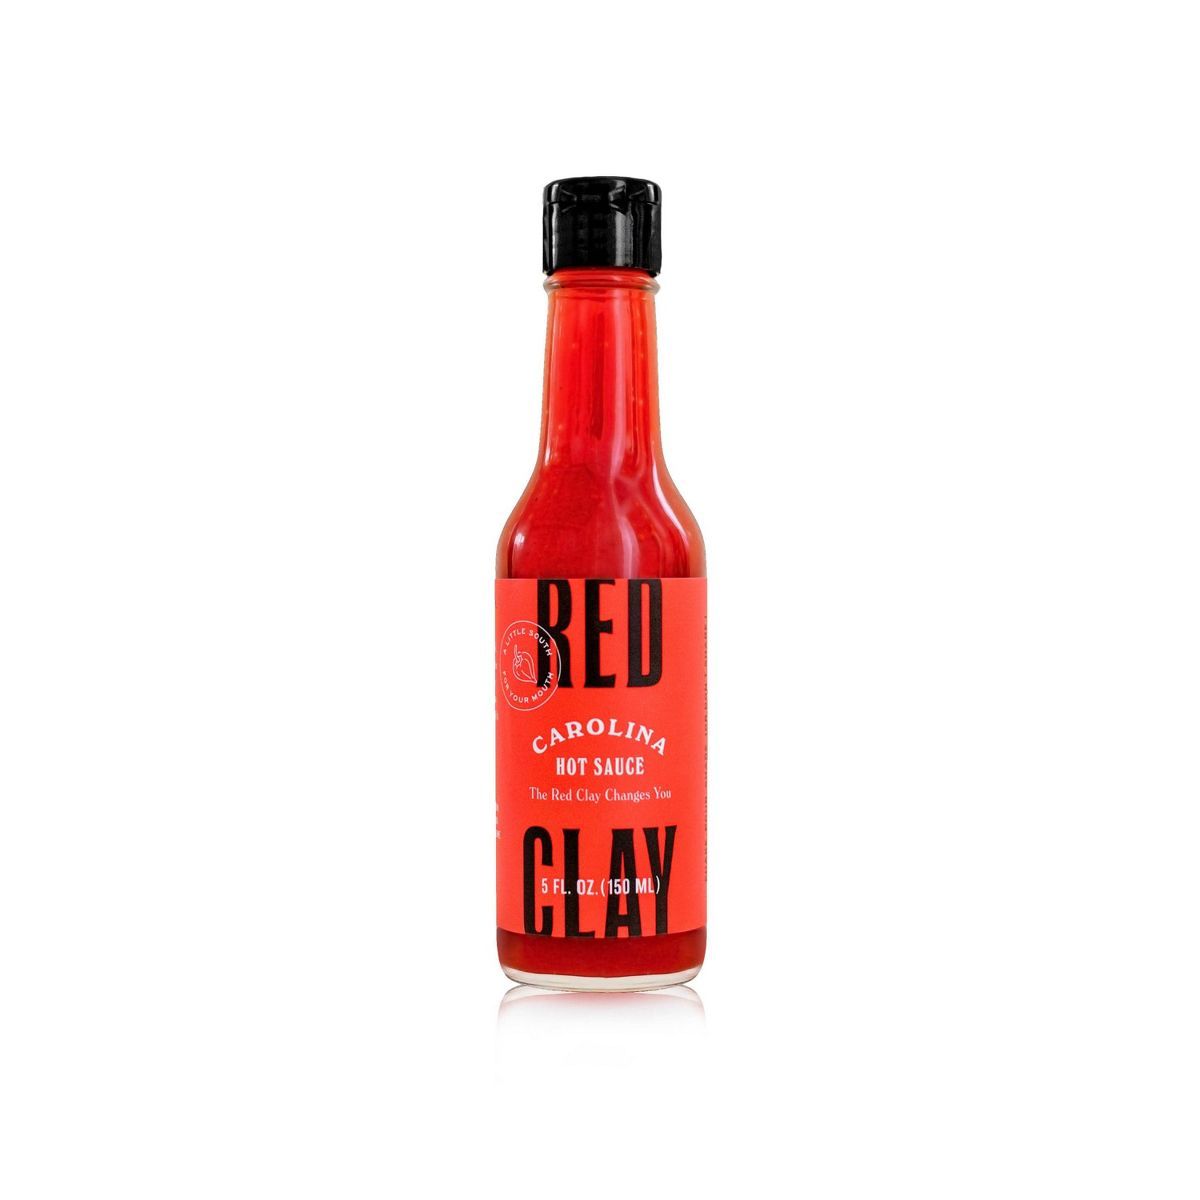 Red Clay Hot Sauce Carolina Hot Sauce - 5oz | Target